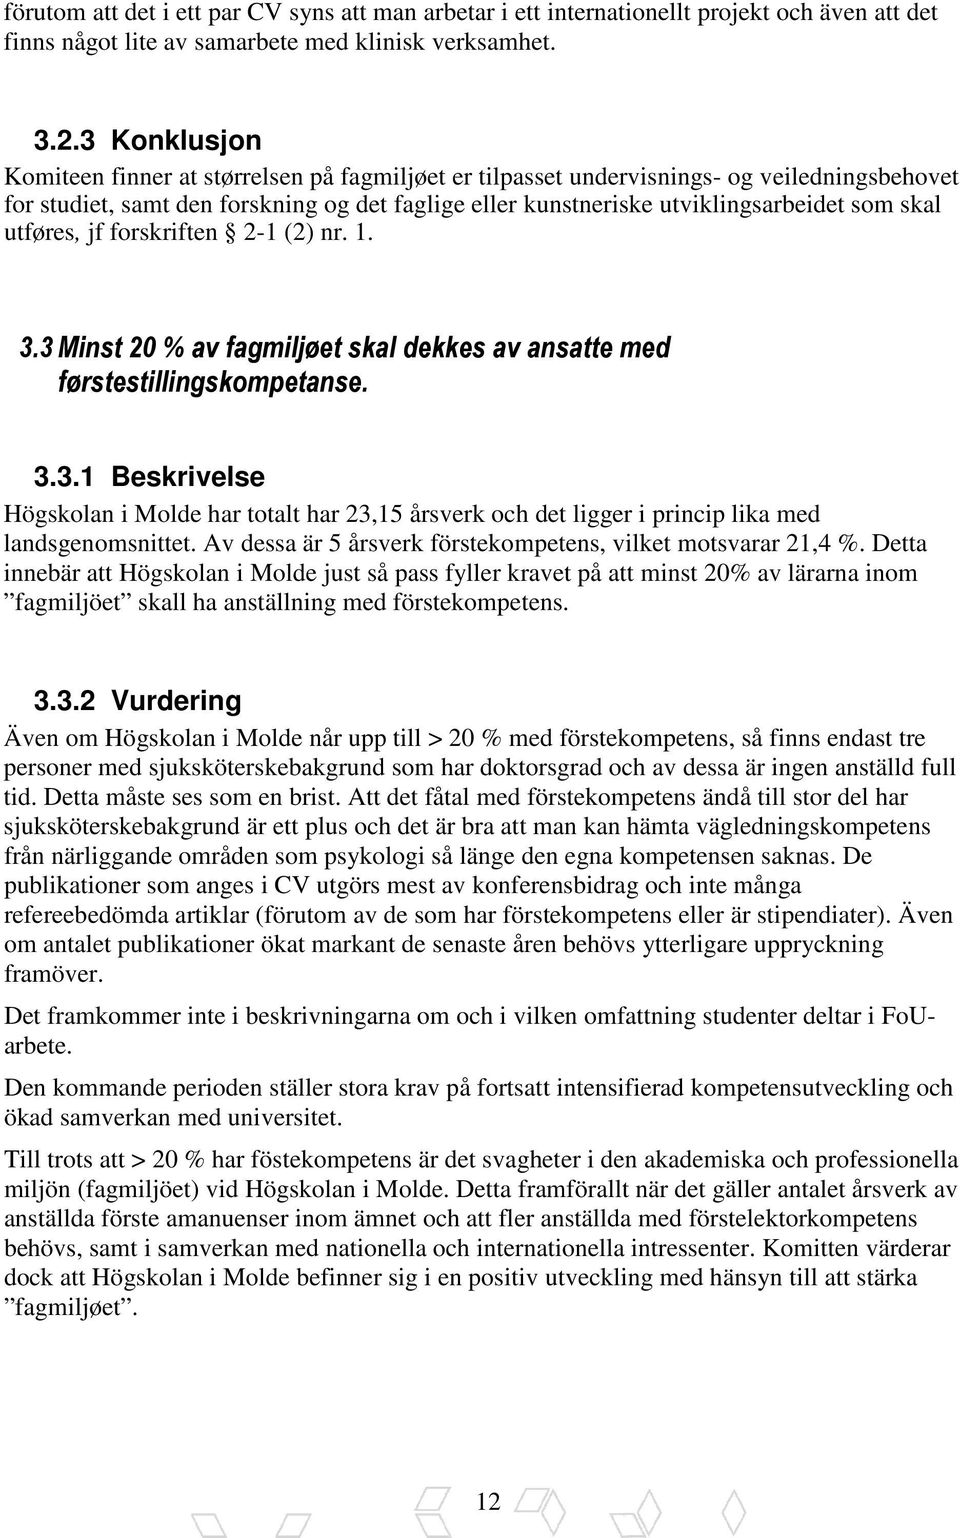 skal utføres, jf forskriften 2-1 (2) nr. 1. 3.3 Minst 20 % av fagmiljøet skal dekkes av ansatte med førstestillingskompetanse. 3.3.1 Beskrivelse Högskolan i Molde har totalt har 23,15 årsverk och det ligger i princip lika med landsgenomsnittet.